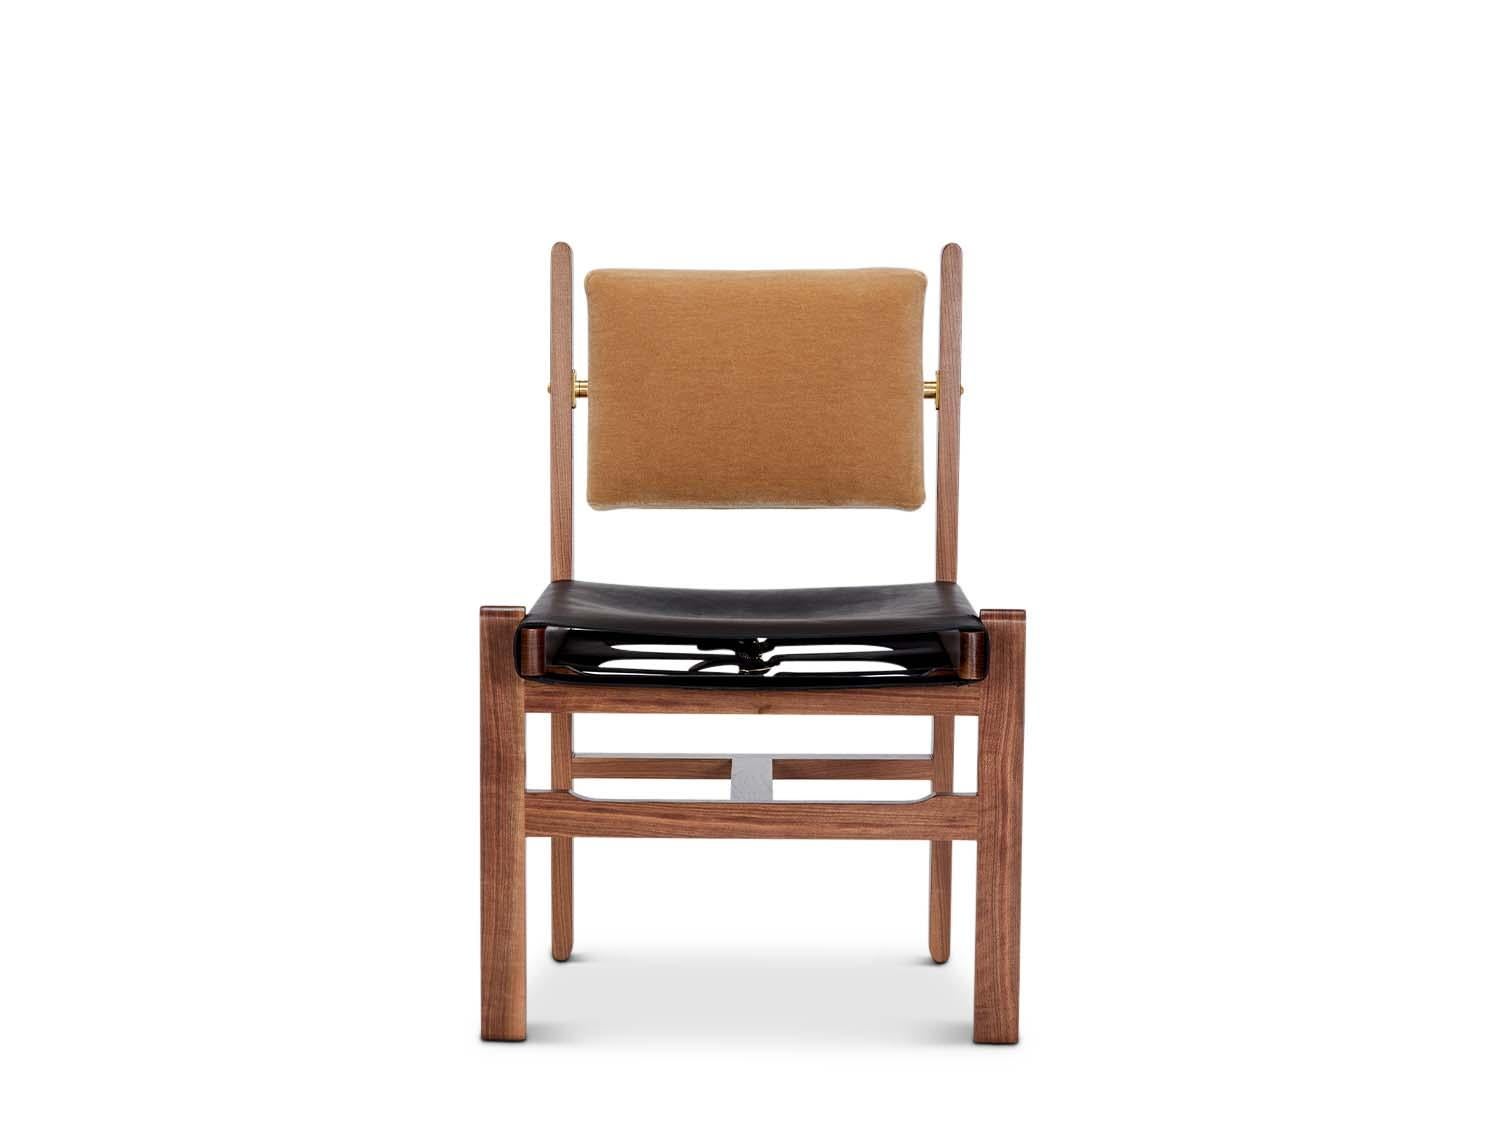 Der Morro Dining Side Chair besteht aus einem massiven Gestell aus amerikanischem Nussbaum oder Weißeiche und verfügt über ein gepolstertes Rückenkissen und einen Ledersitz mit Schlaufen.

Die Lawson-Fenning Collection'S wird in Los Angeles,